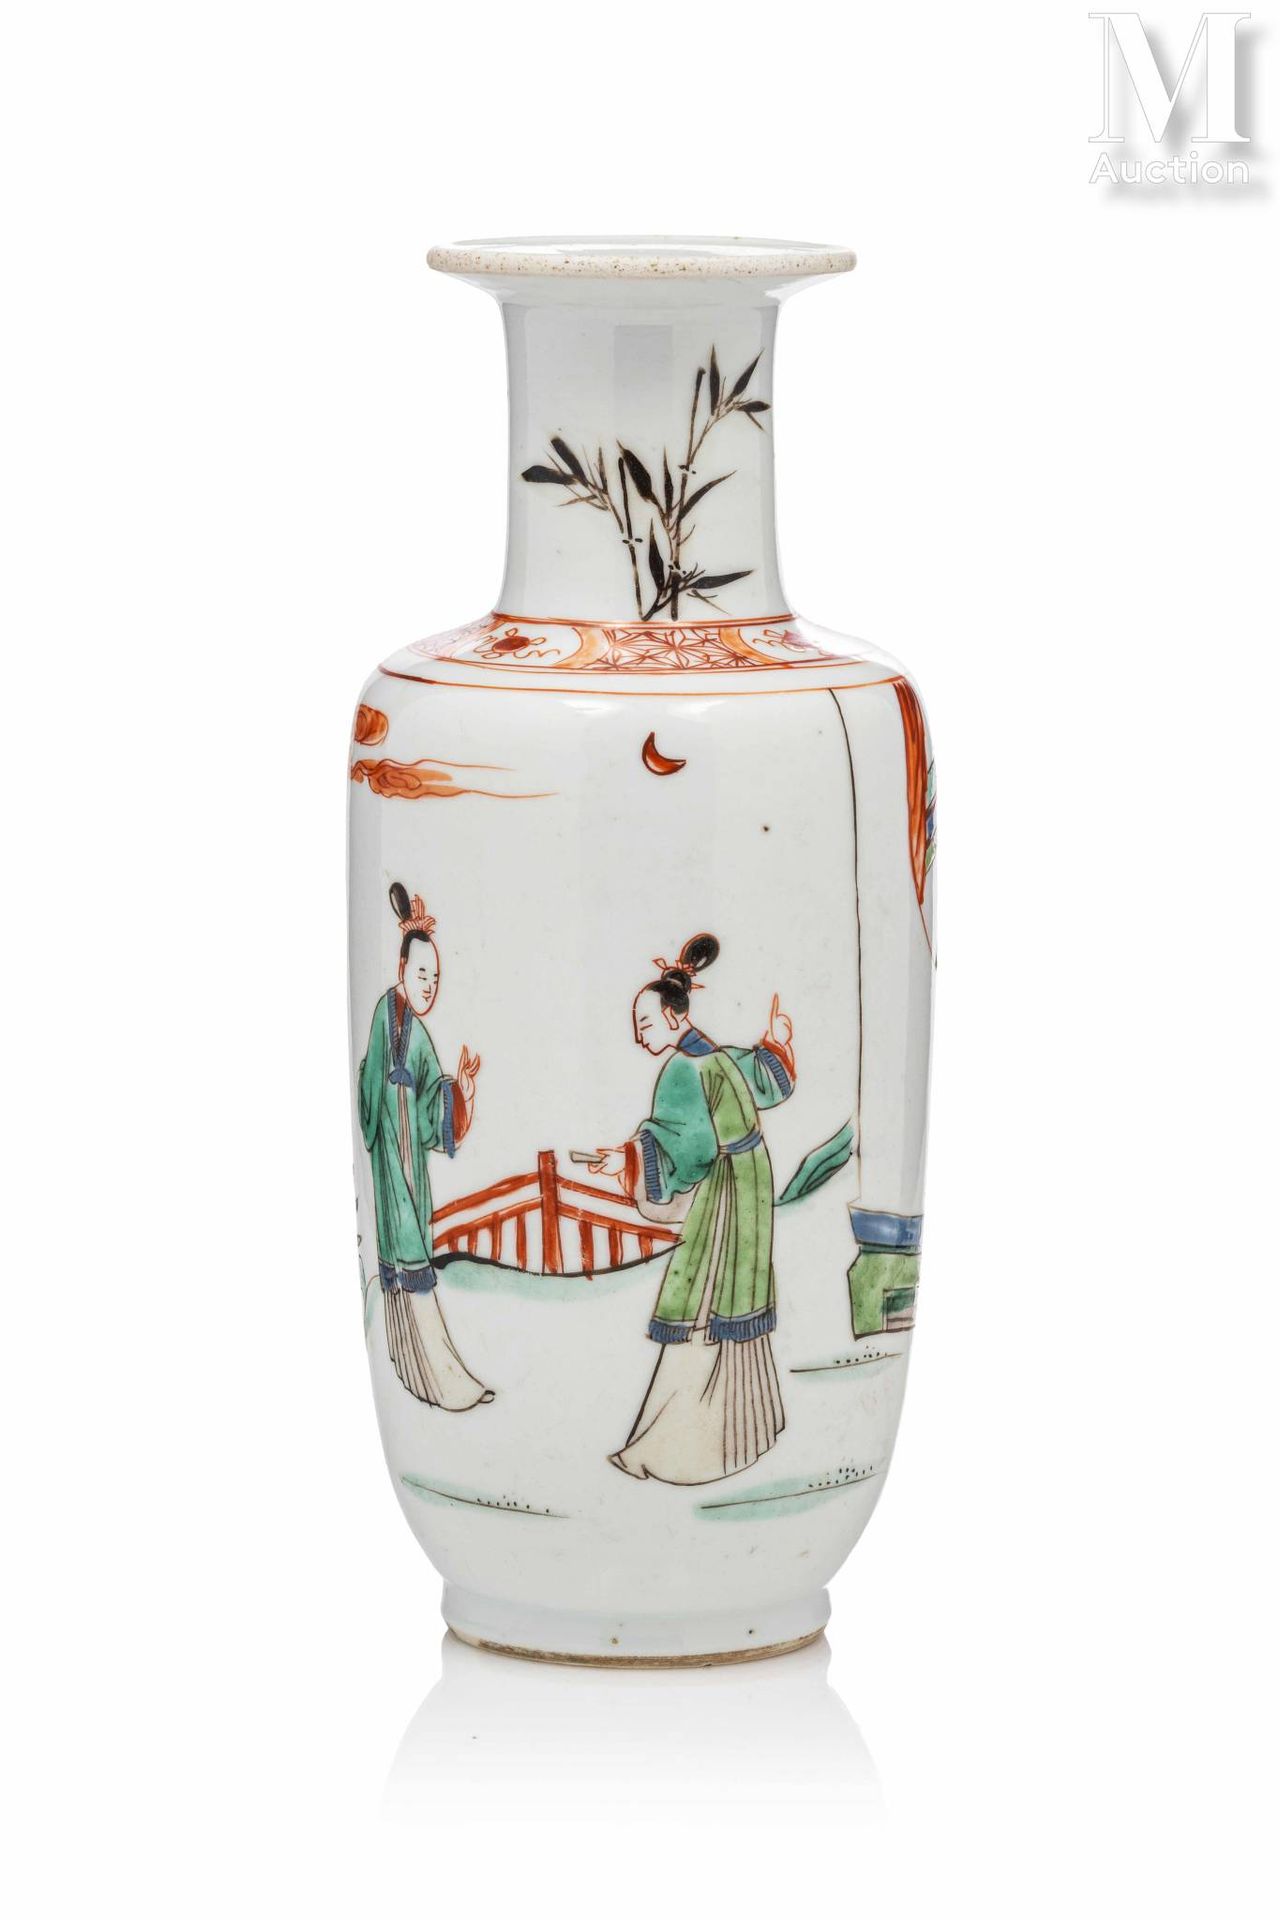 CHINE, XVIIIe siècle 小瓷器卷轴花瓶

饰以多色珐琅彩，描绘两位优雅的女士在户外露台上交谈，颈部饰以竹枝。 

高度：20,5厘米